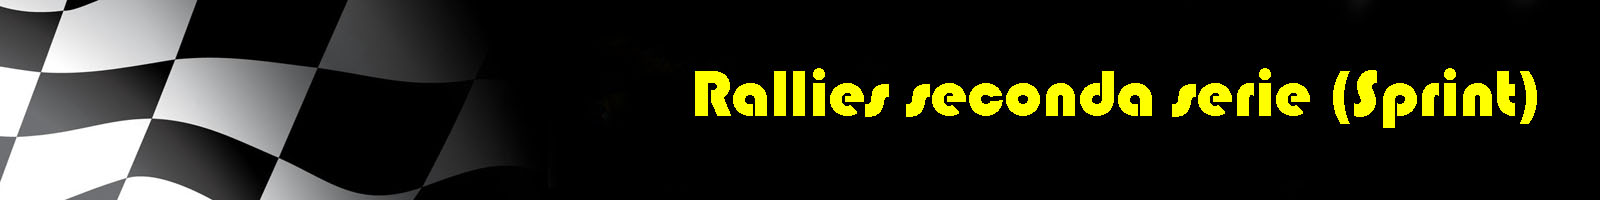 090 - rally seconda serie (Sprint)